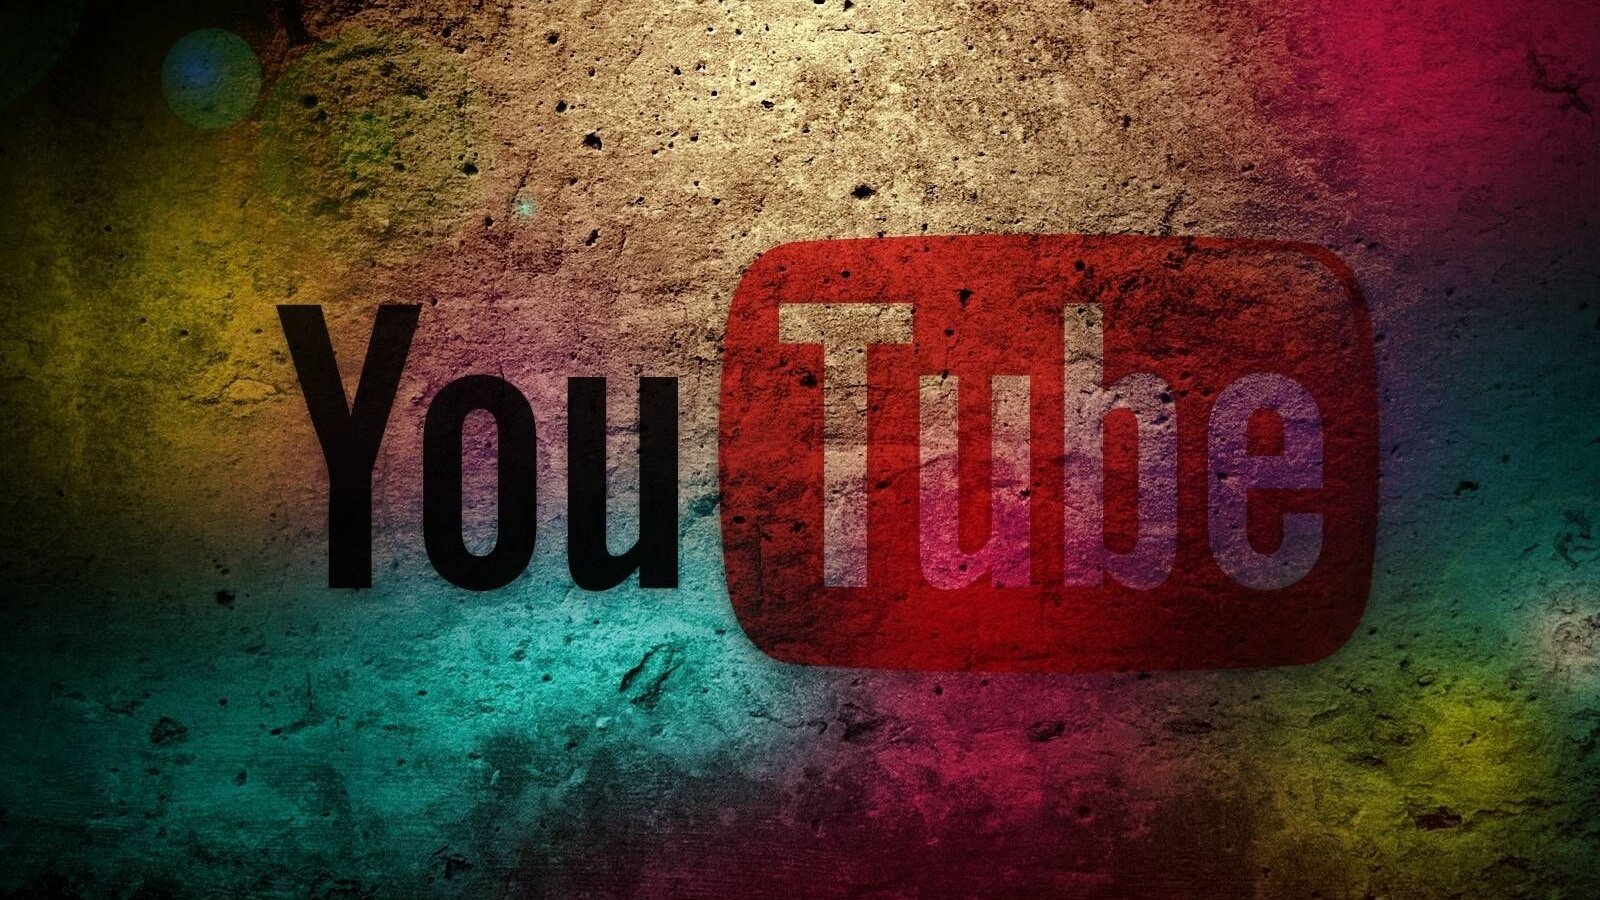 První video na YouTube překonalo 10 miliard zhlédnutí